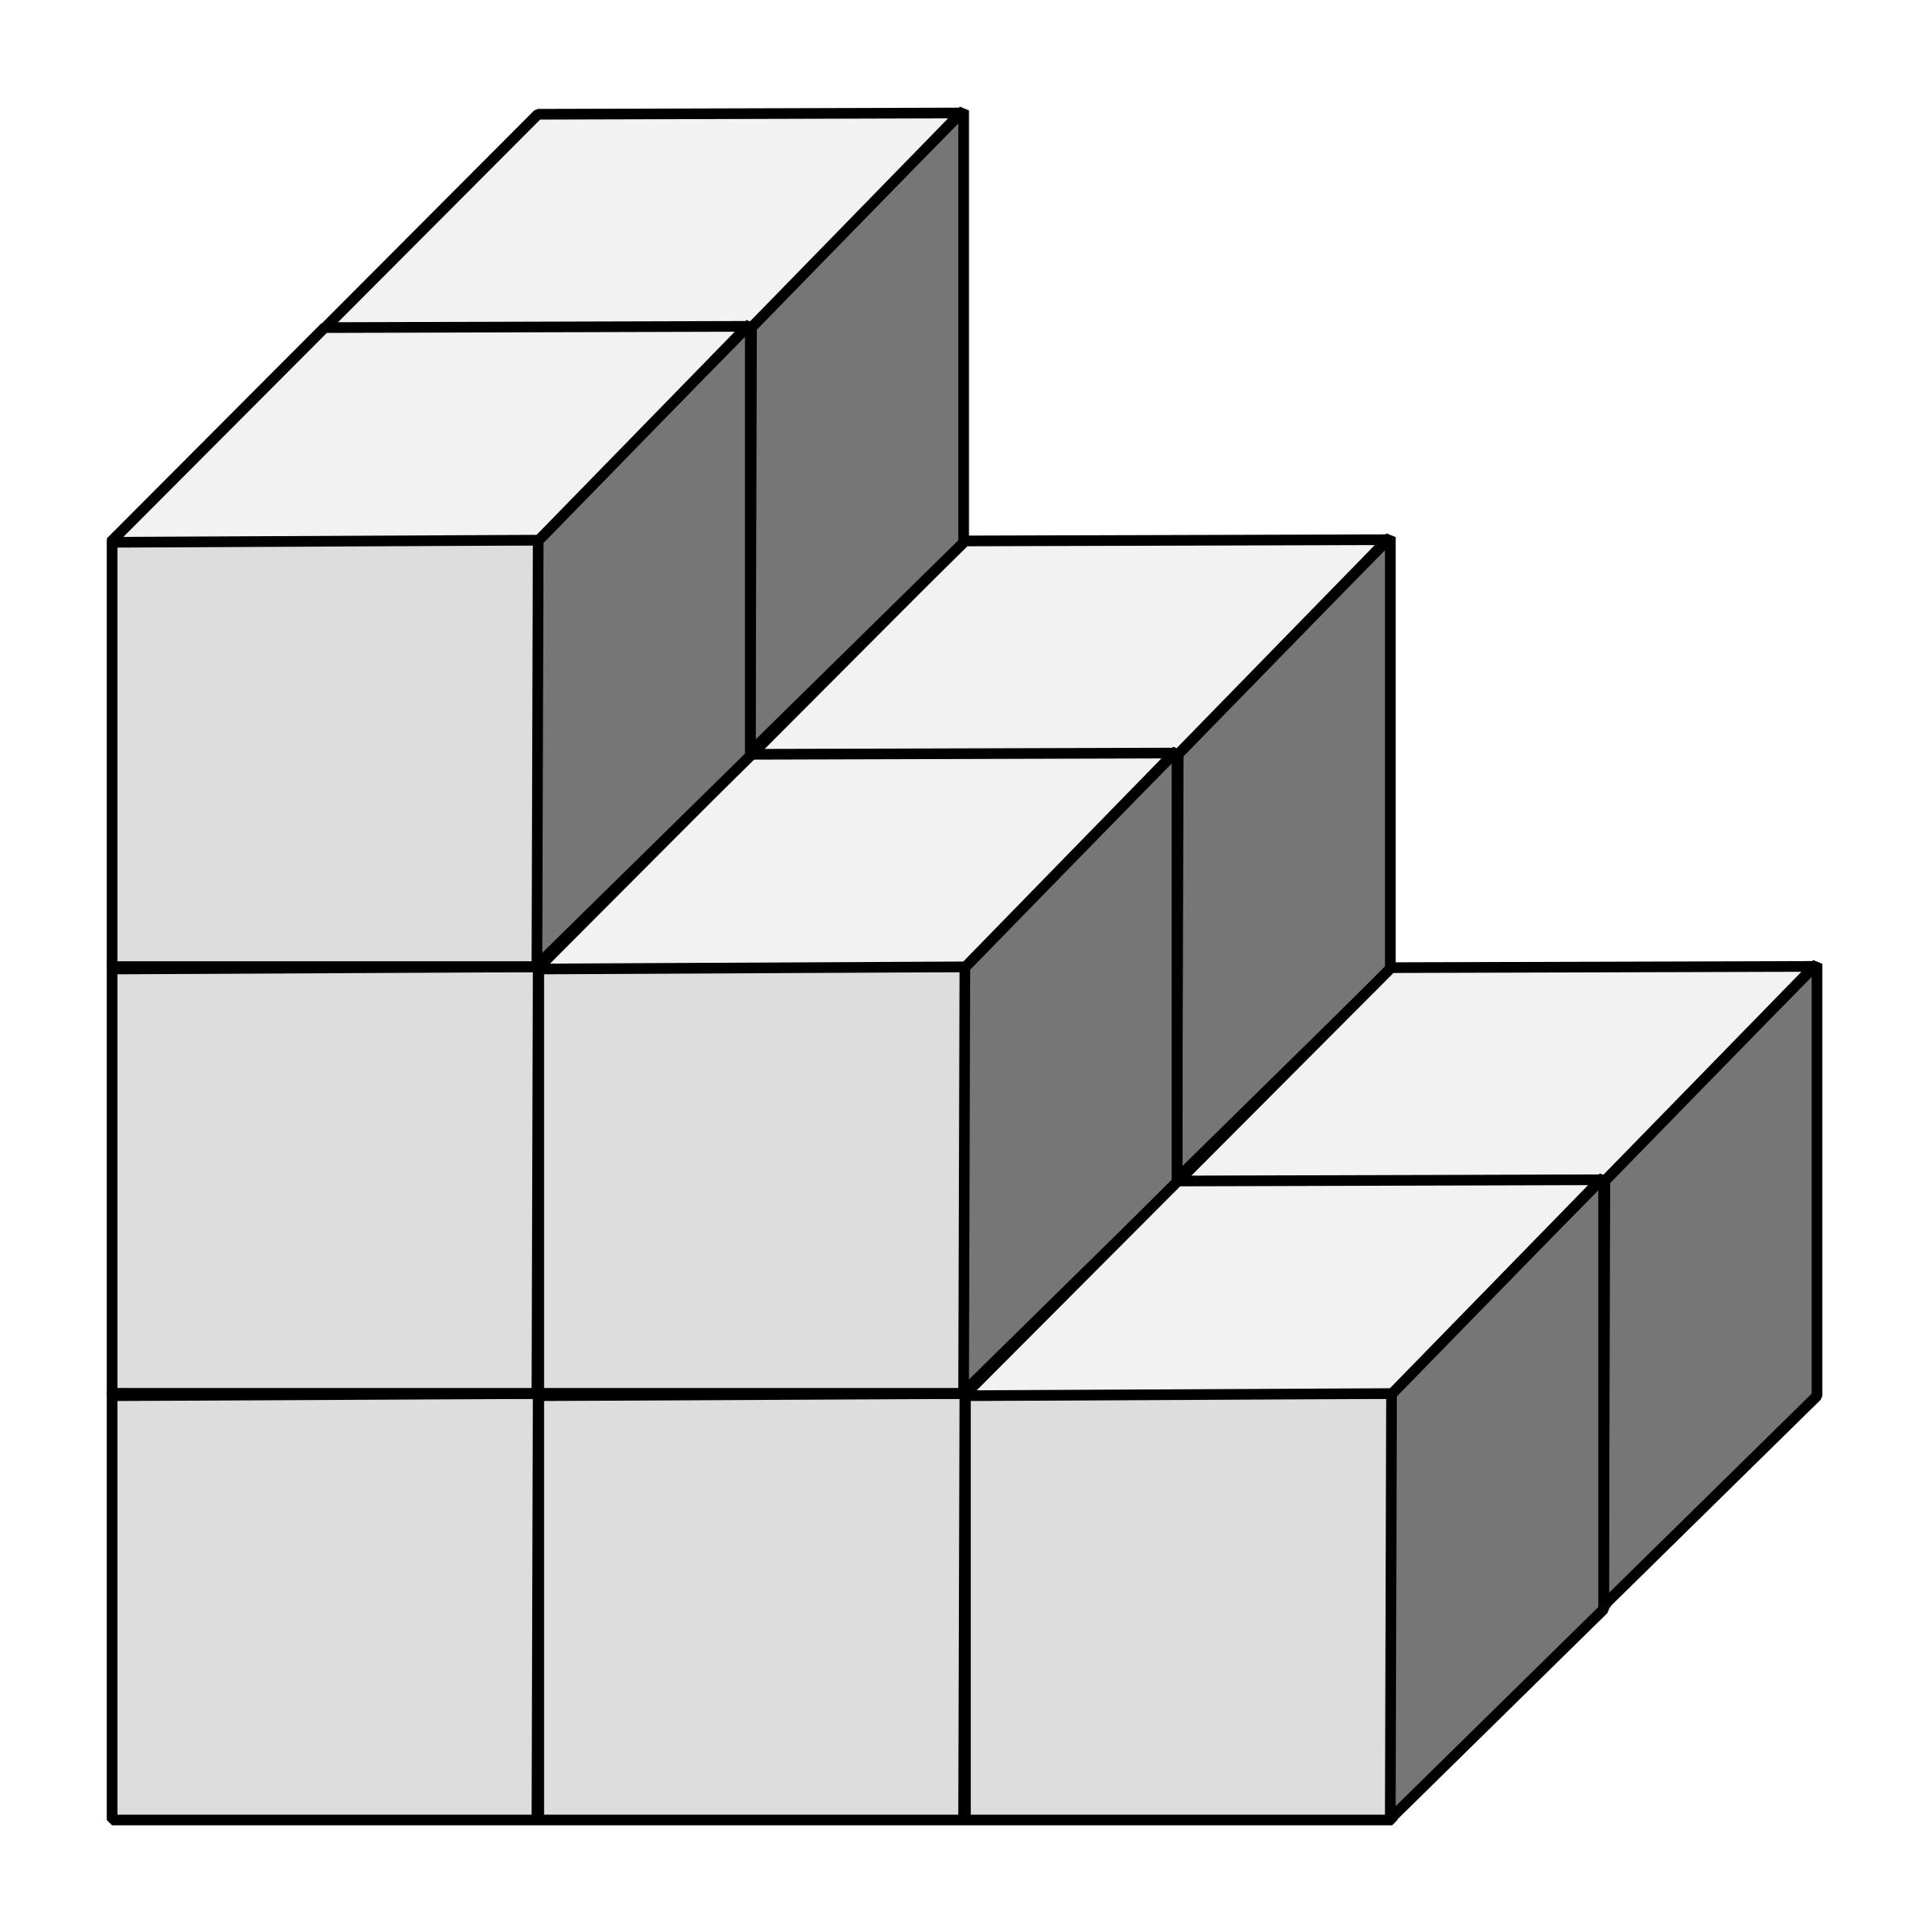 Найди сколько кубиков